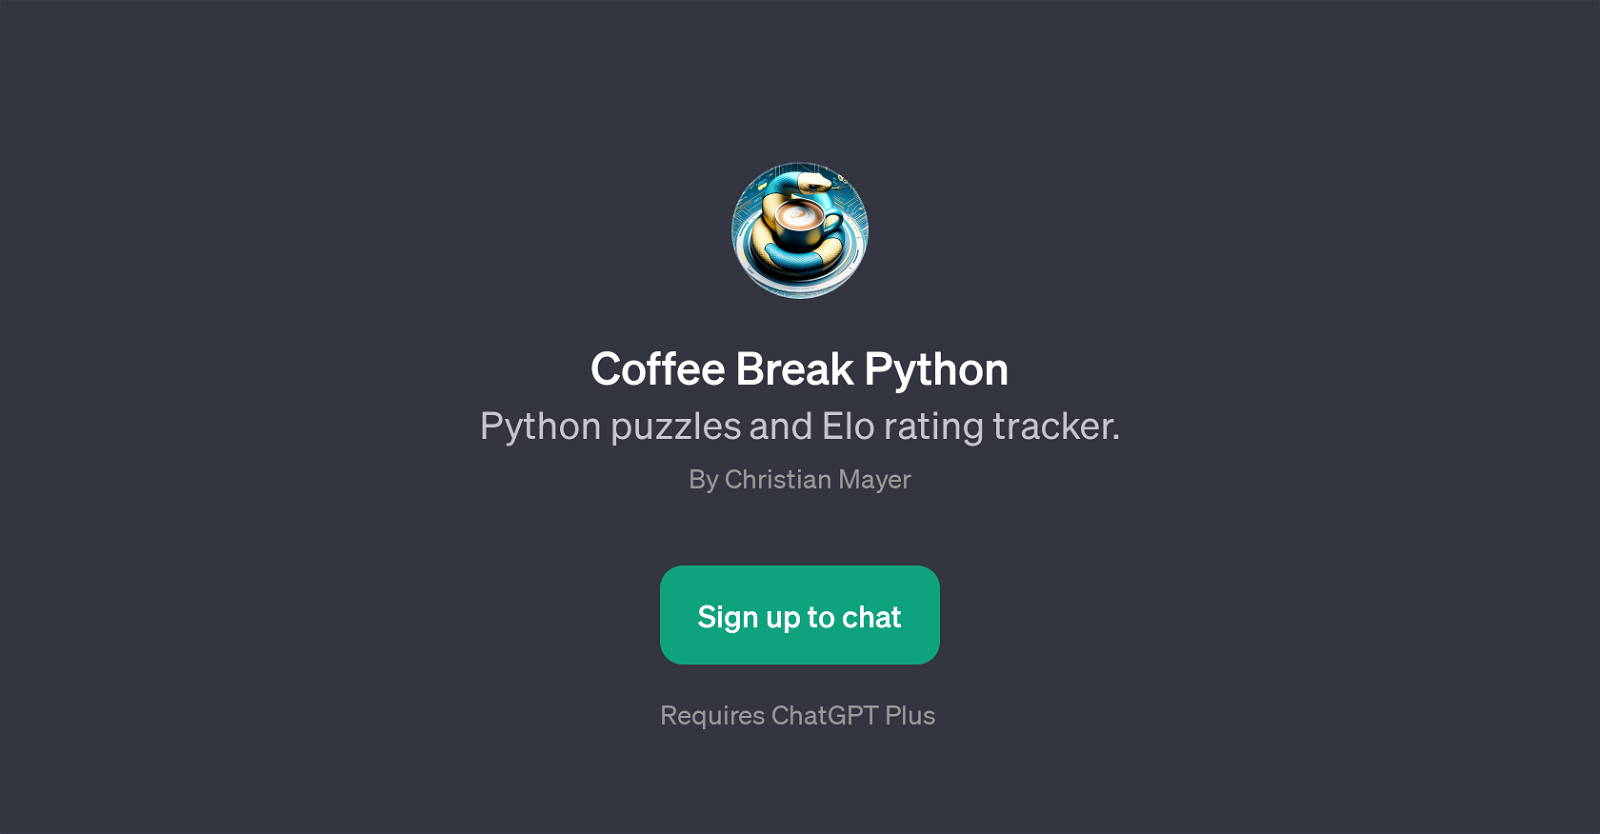 Coffee Break Python website